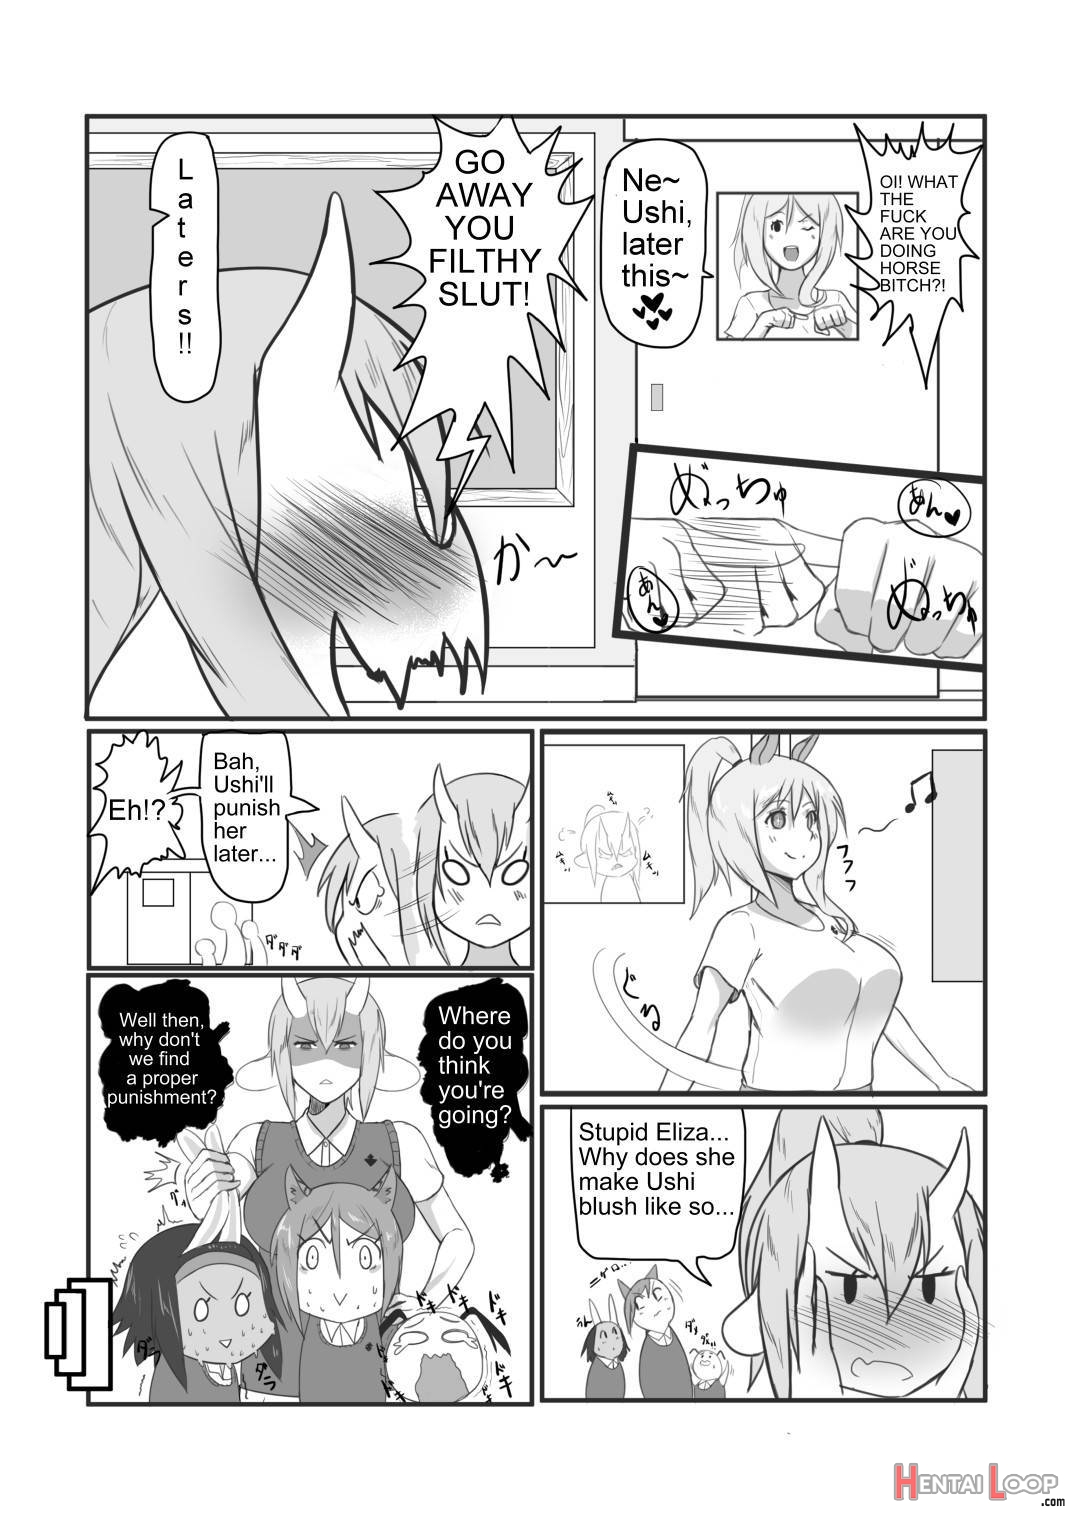 Umaushi page 4